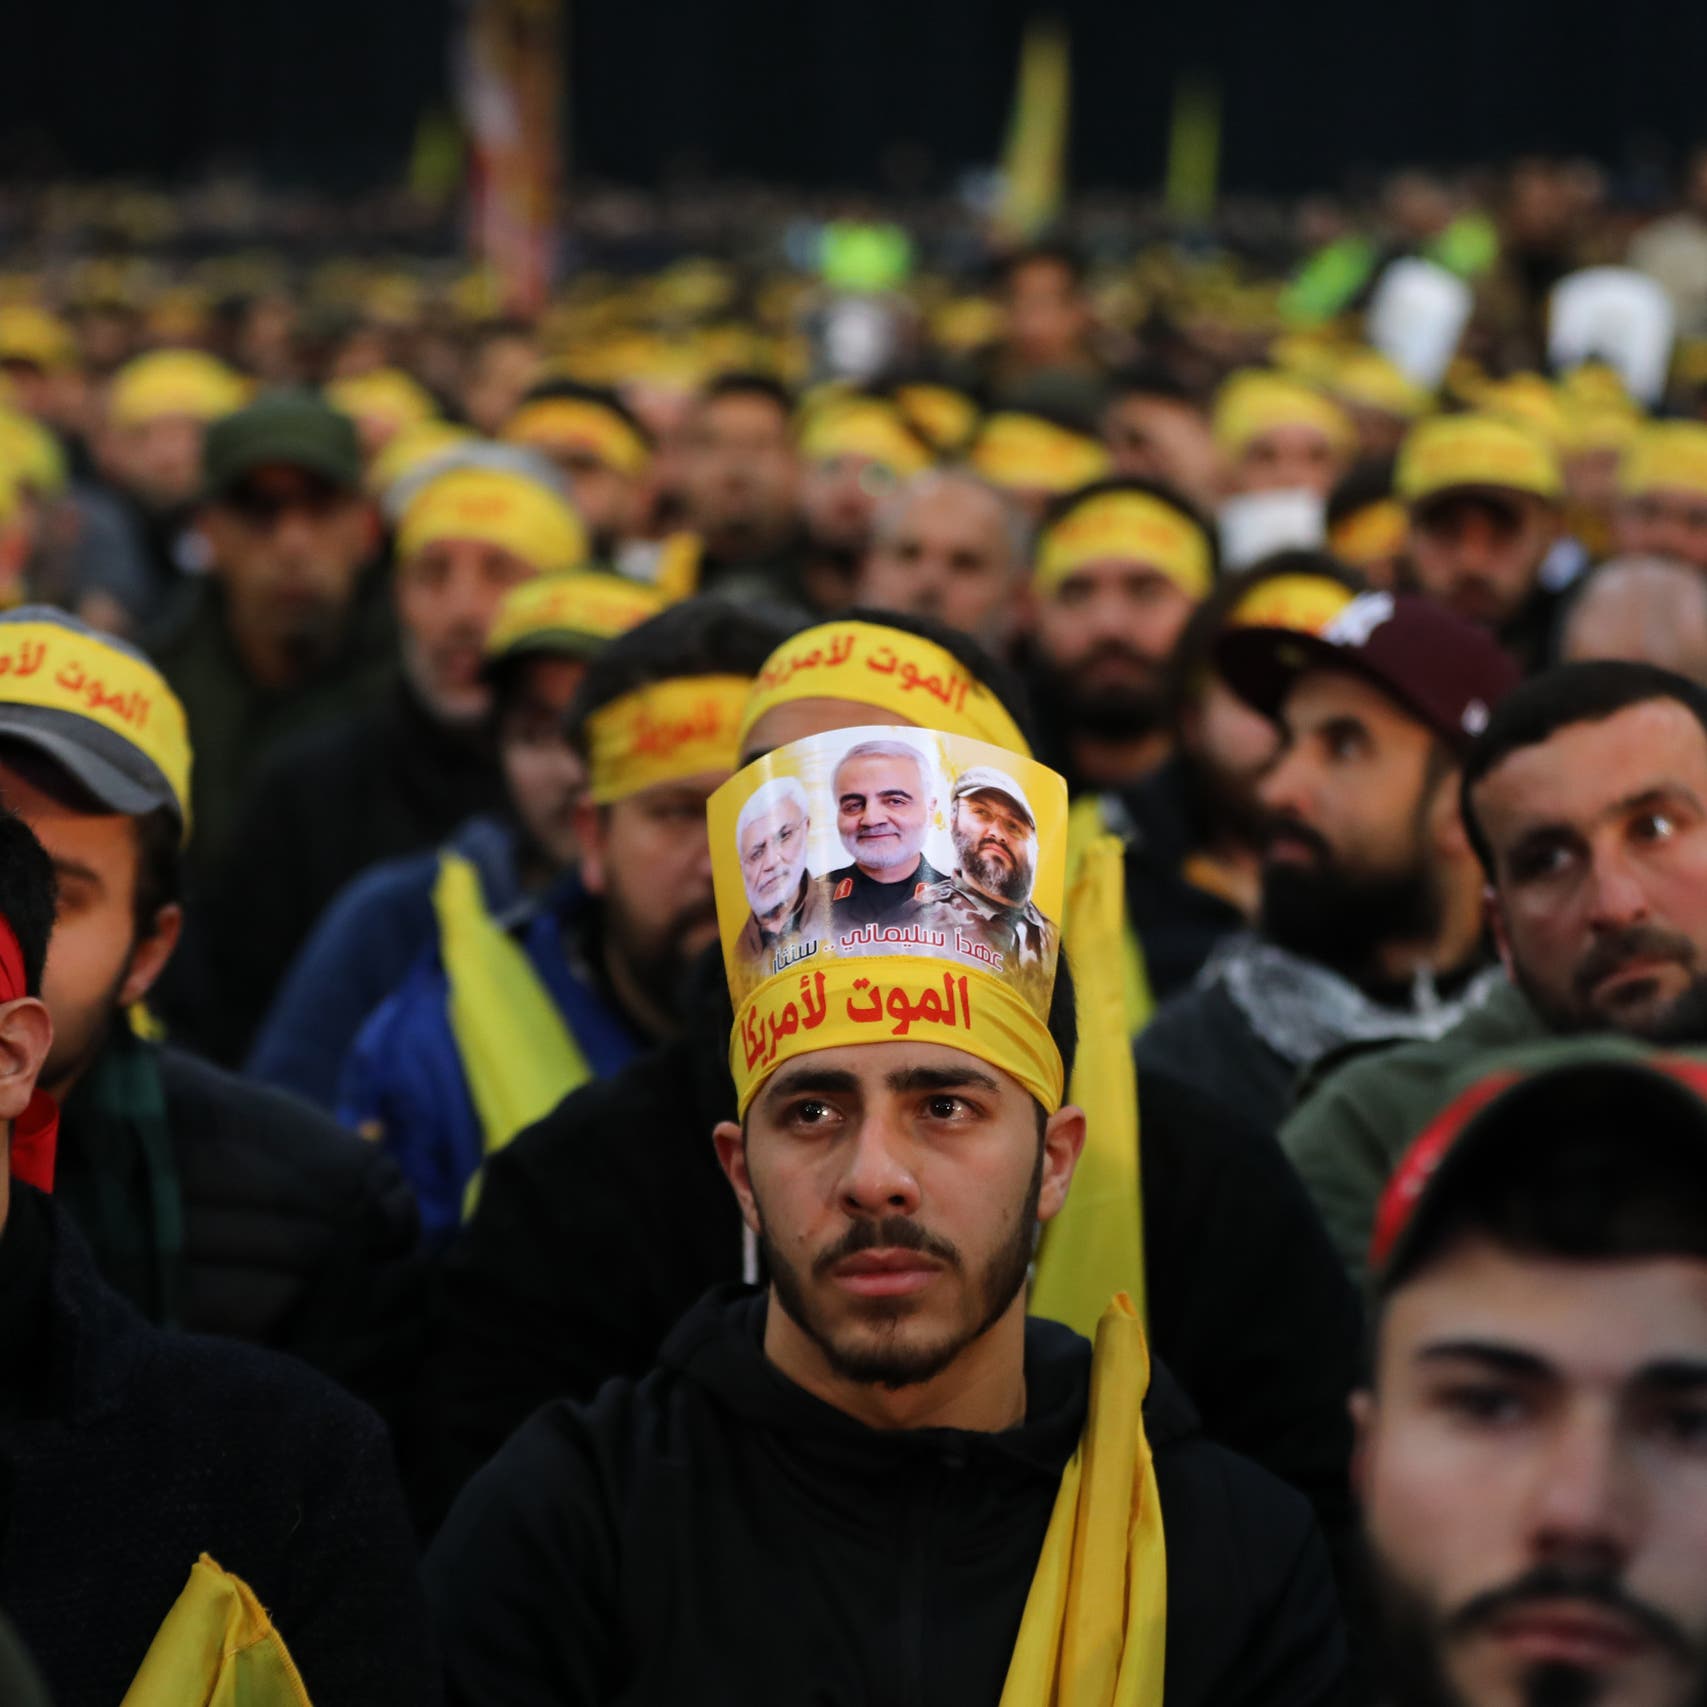 بالتفصيل.. أسرار وراء شركات حزب الله المعاقبة أميركياً